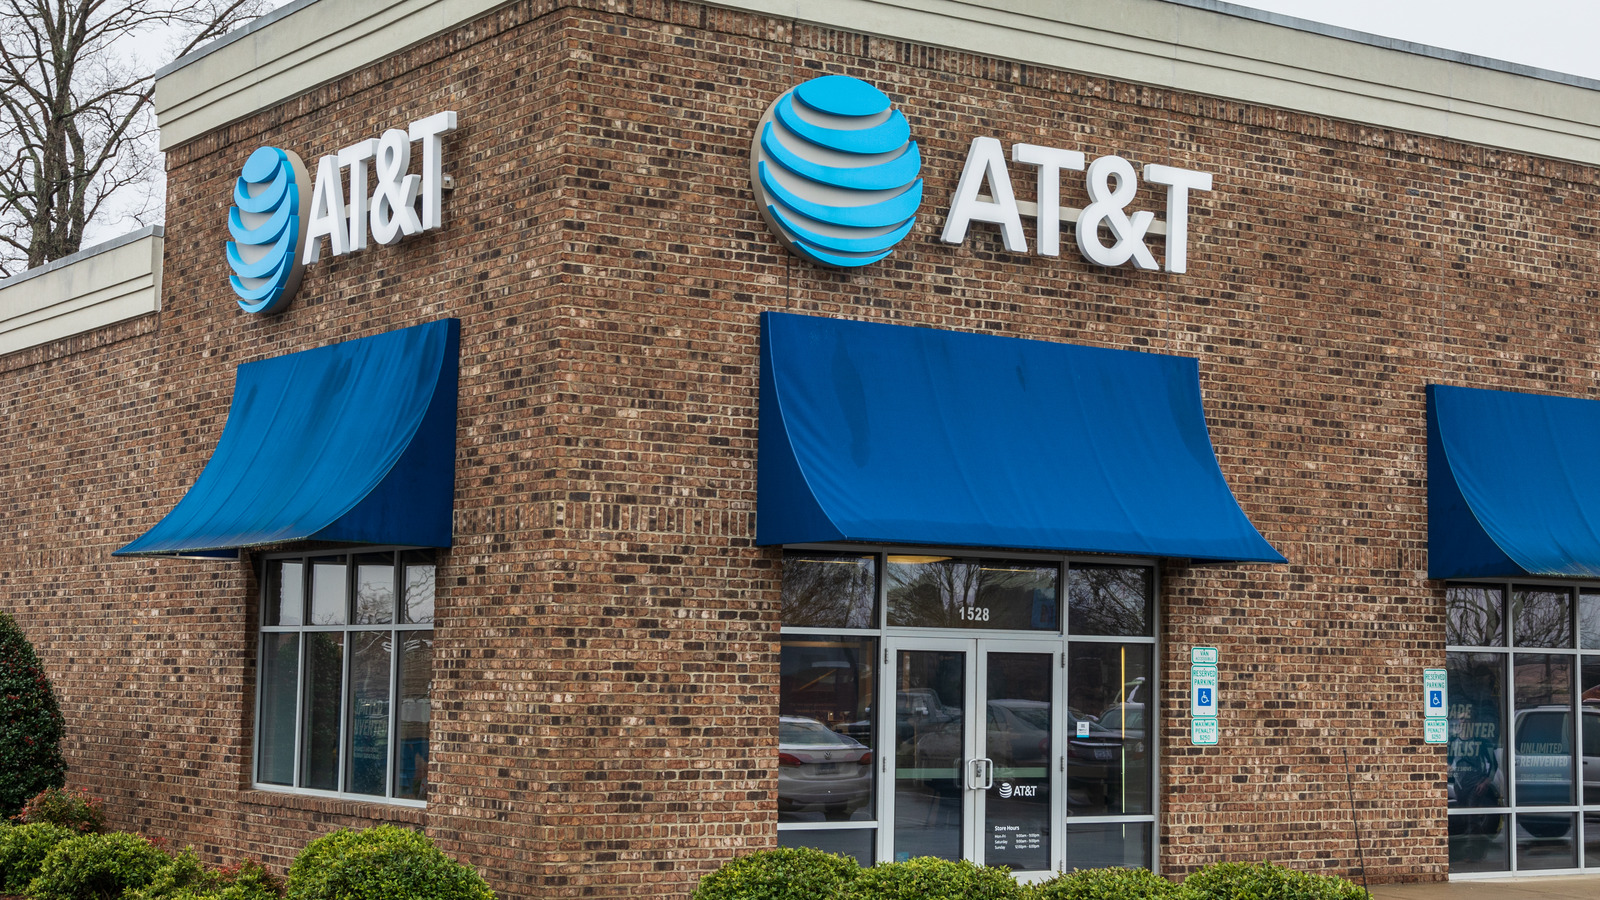 El crédito de $5 para apagones de AT&T ha provocado un gran revuelo, pero ¿estamos esperando demasiado?